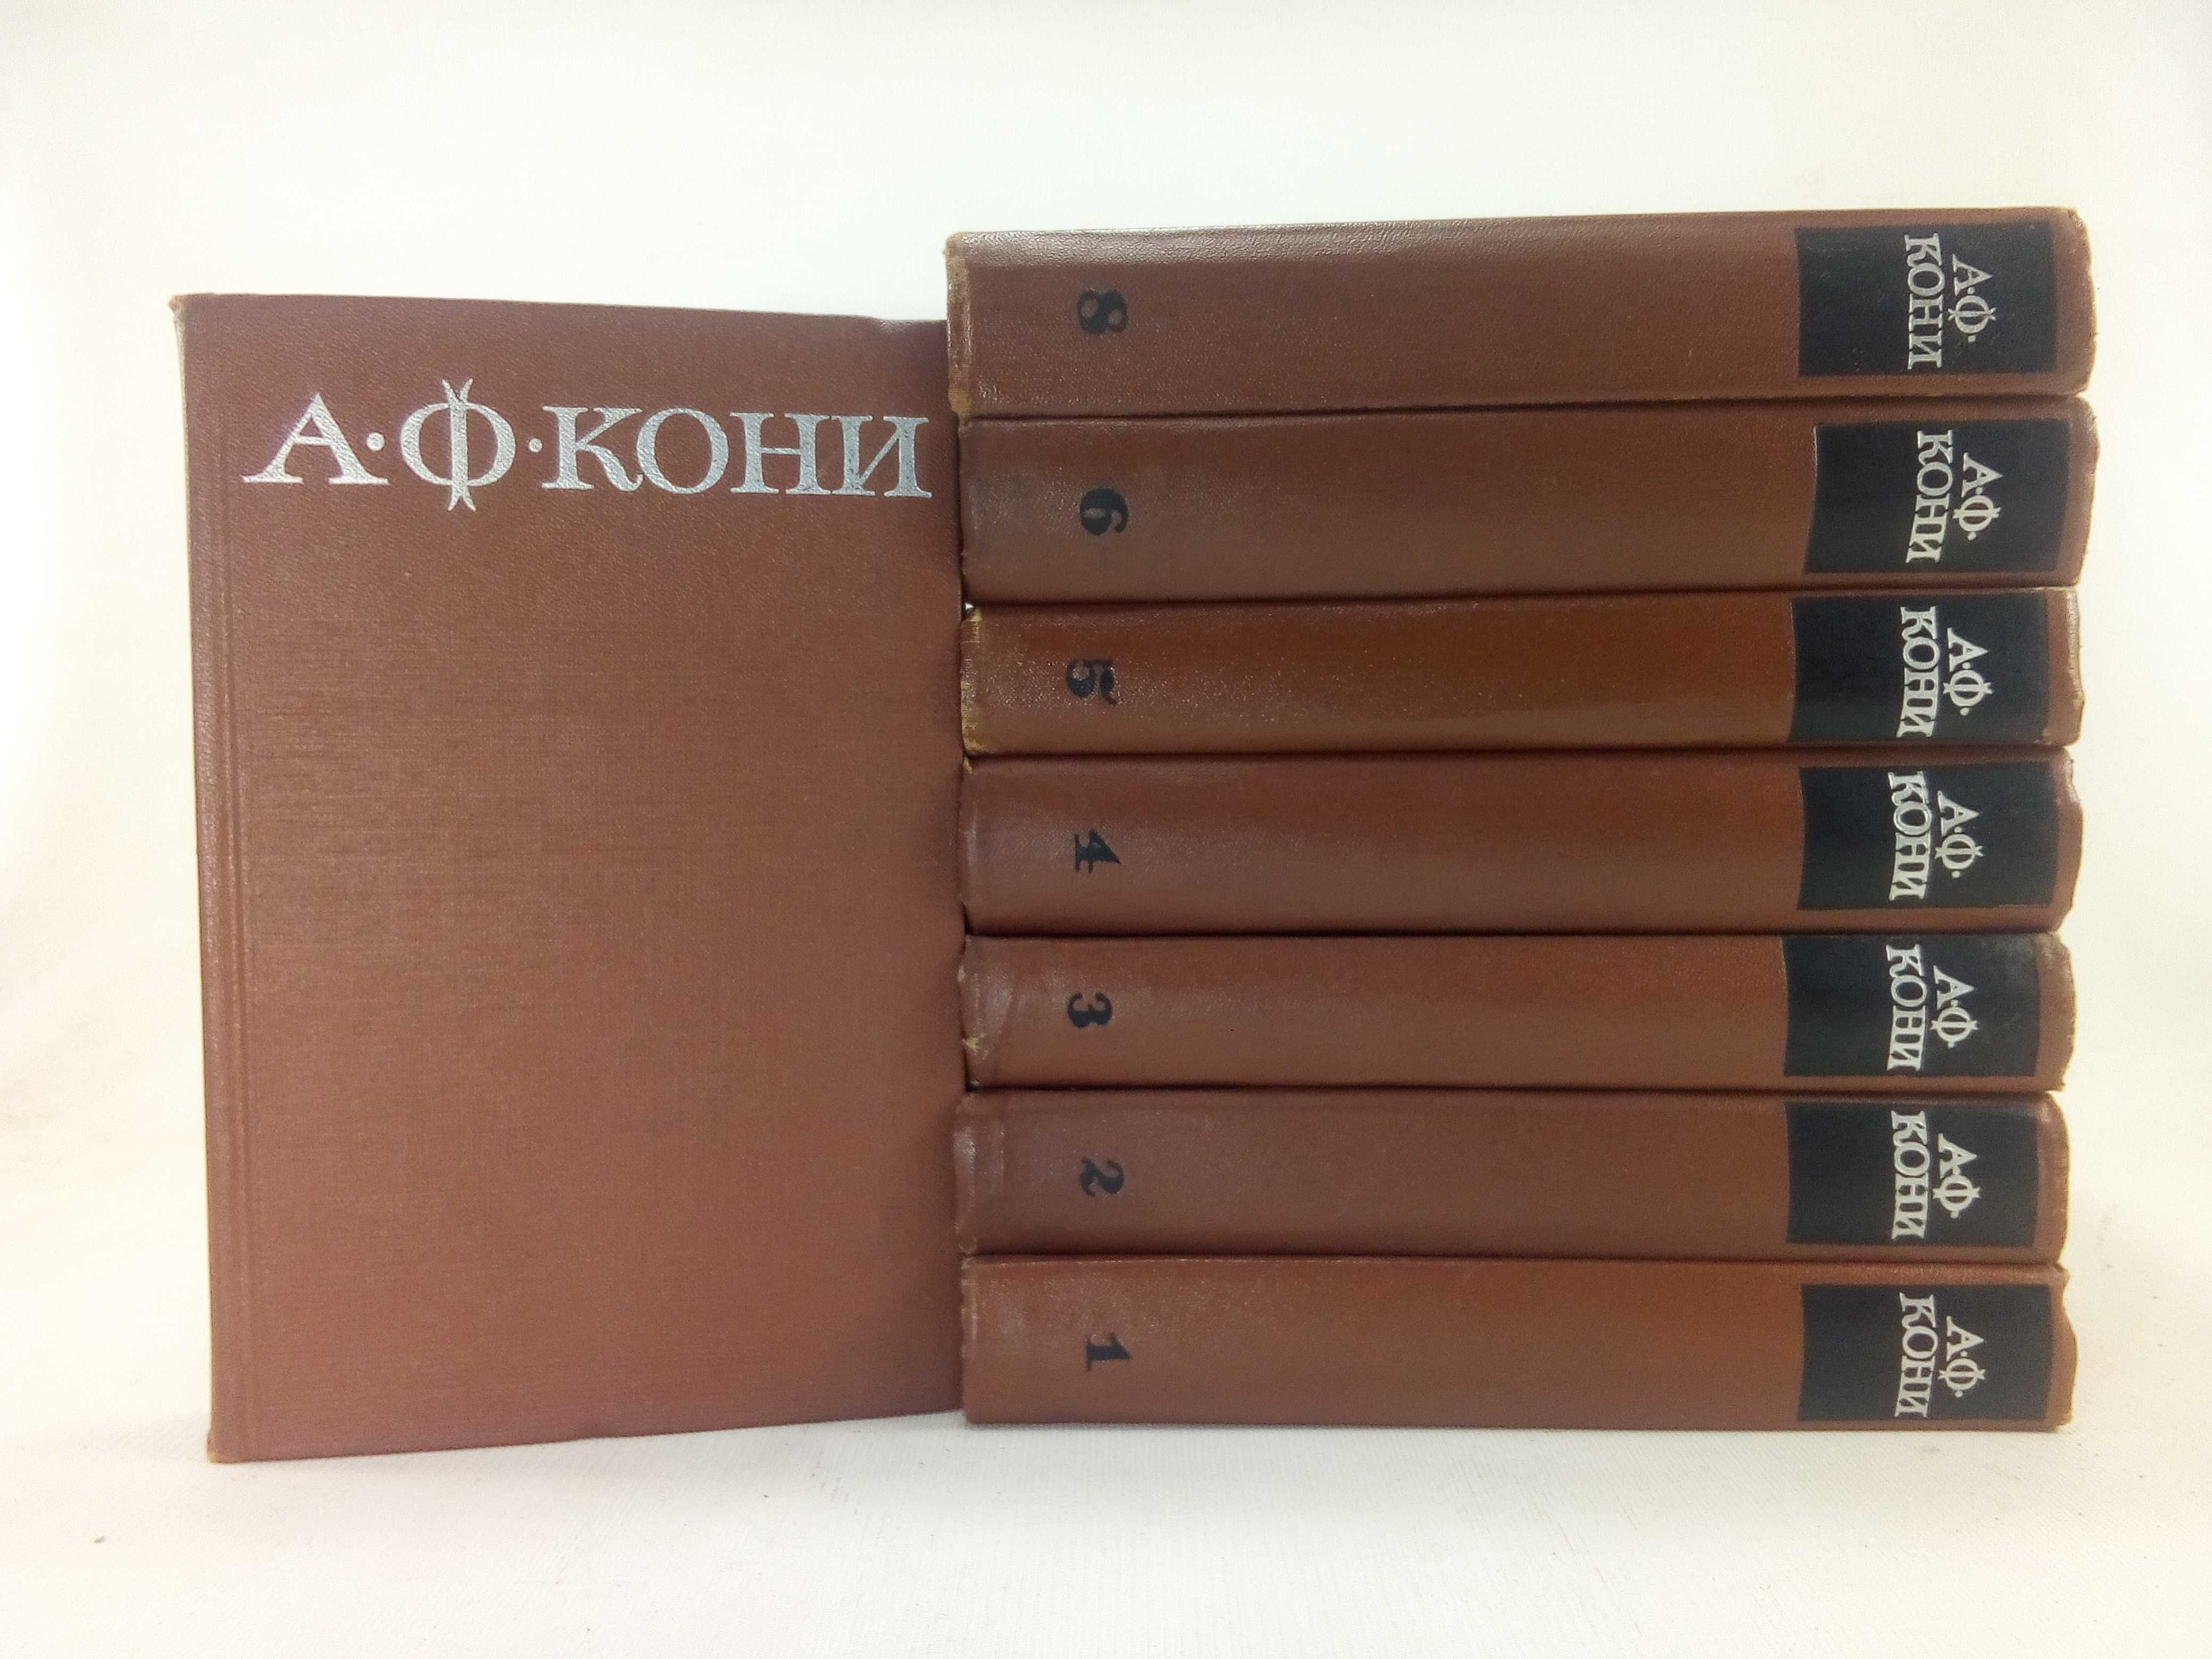 Кони А. Ф. Собрание сочинений в 8 восьми томах.